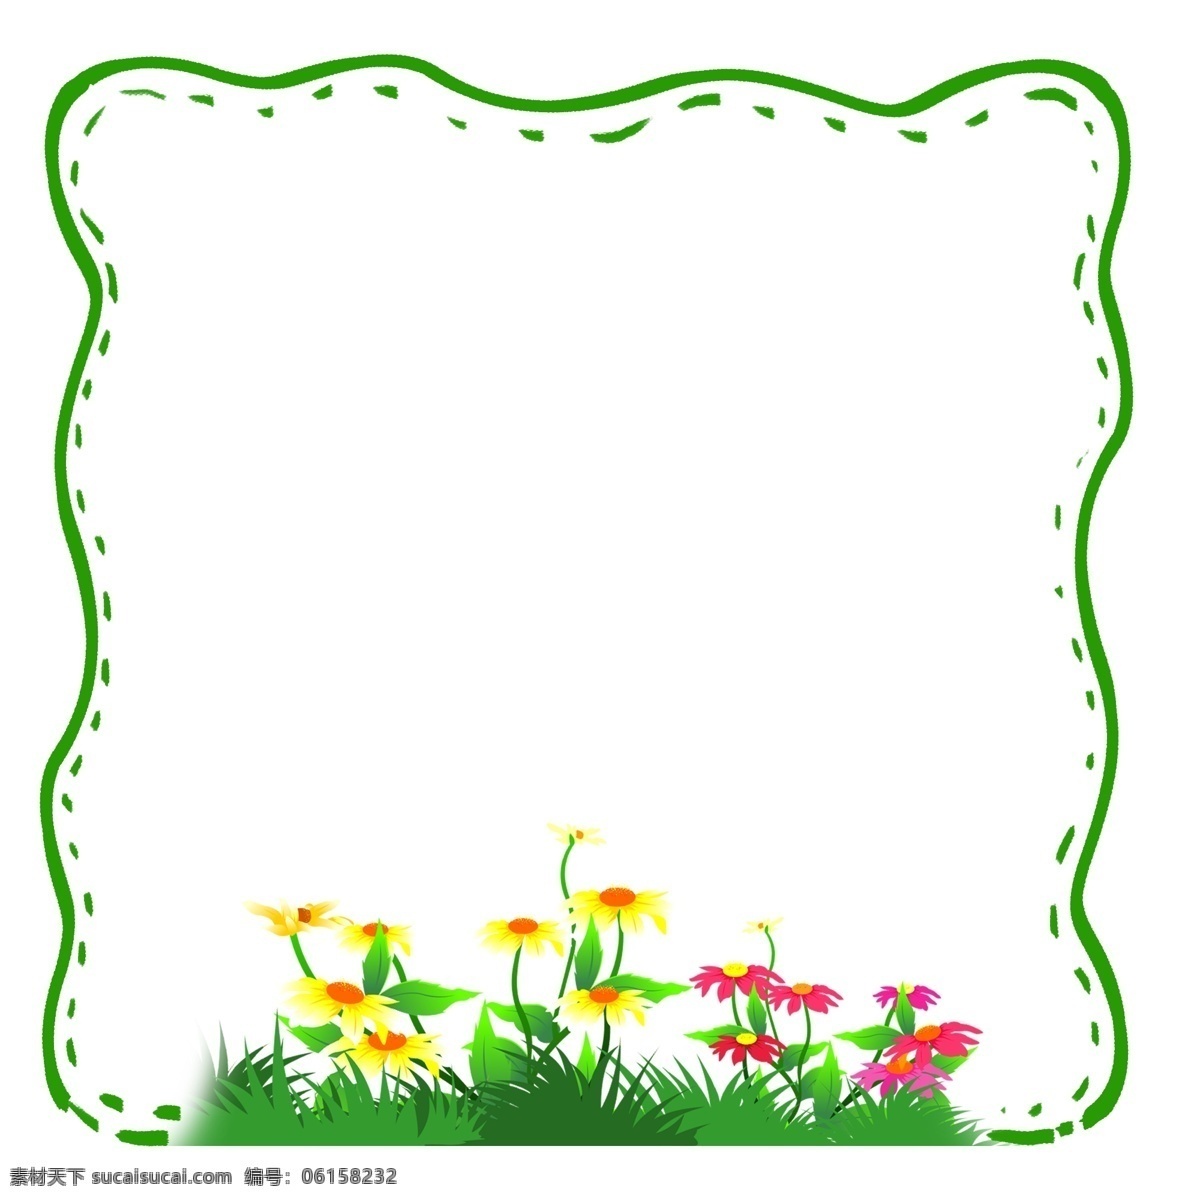 简约 美观 绿色 波纹 创意 边框 边框纹理 波纹边框 绿色线条 美丽花朵 创意设计